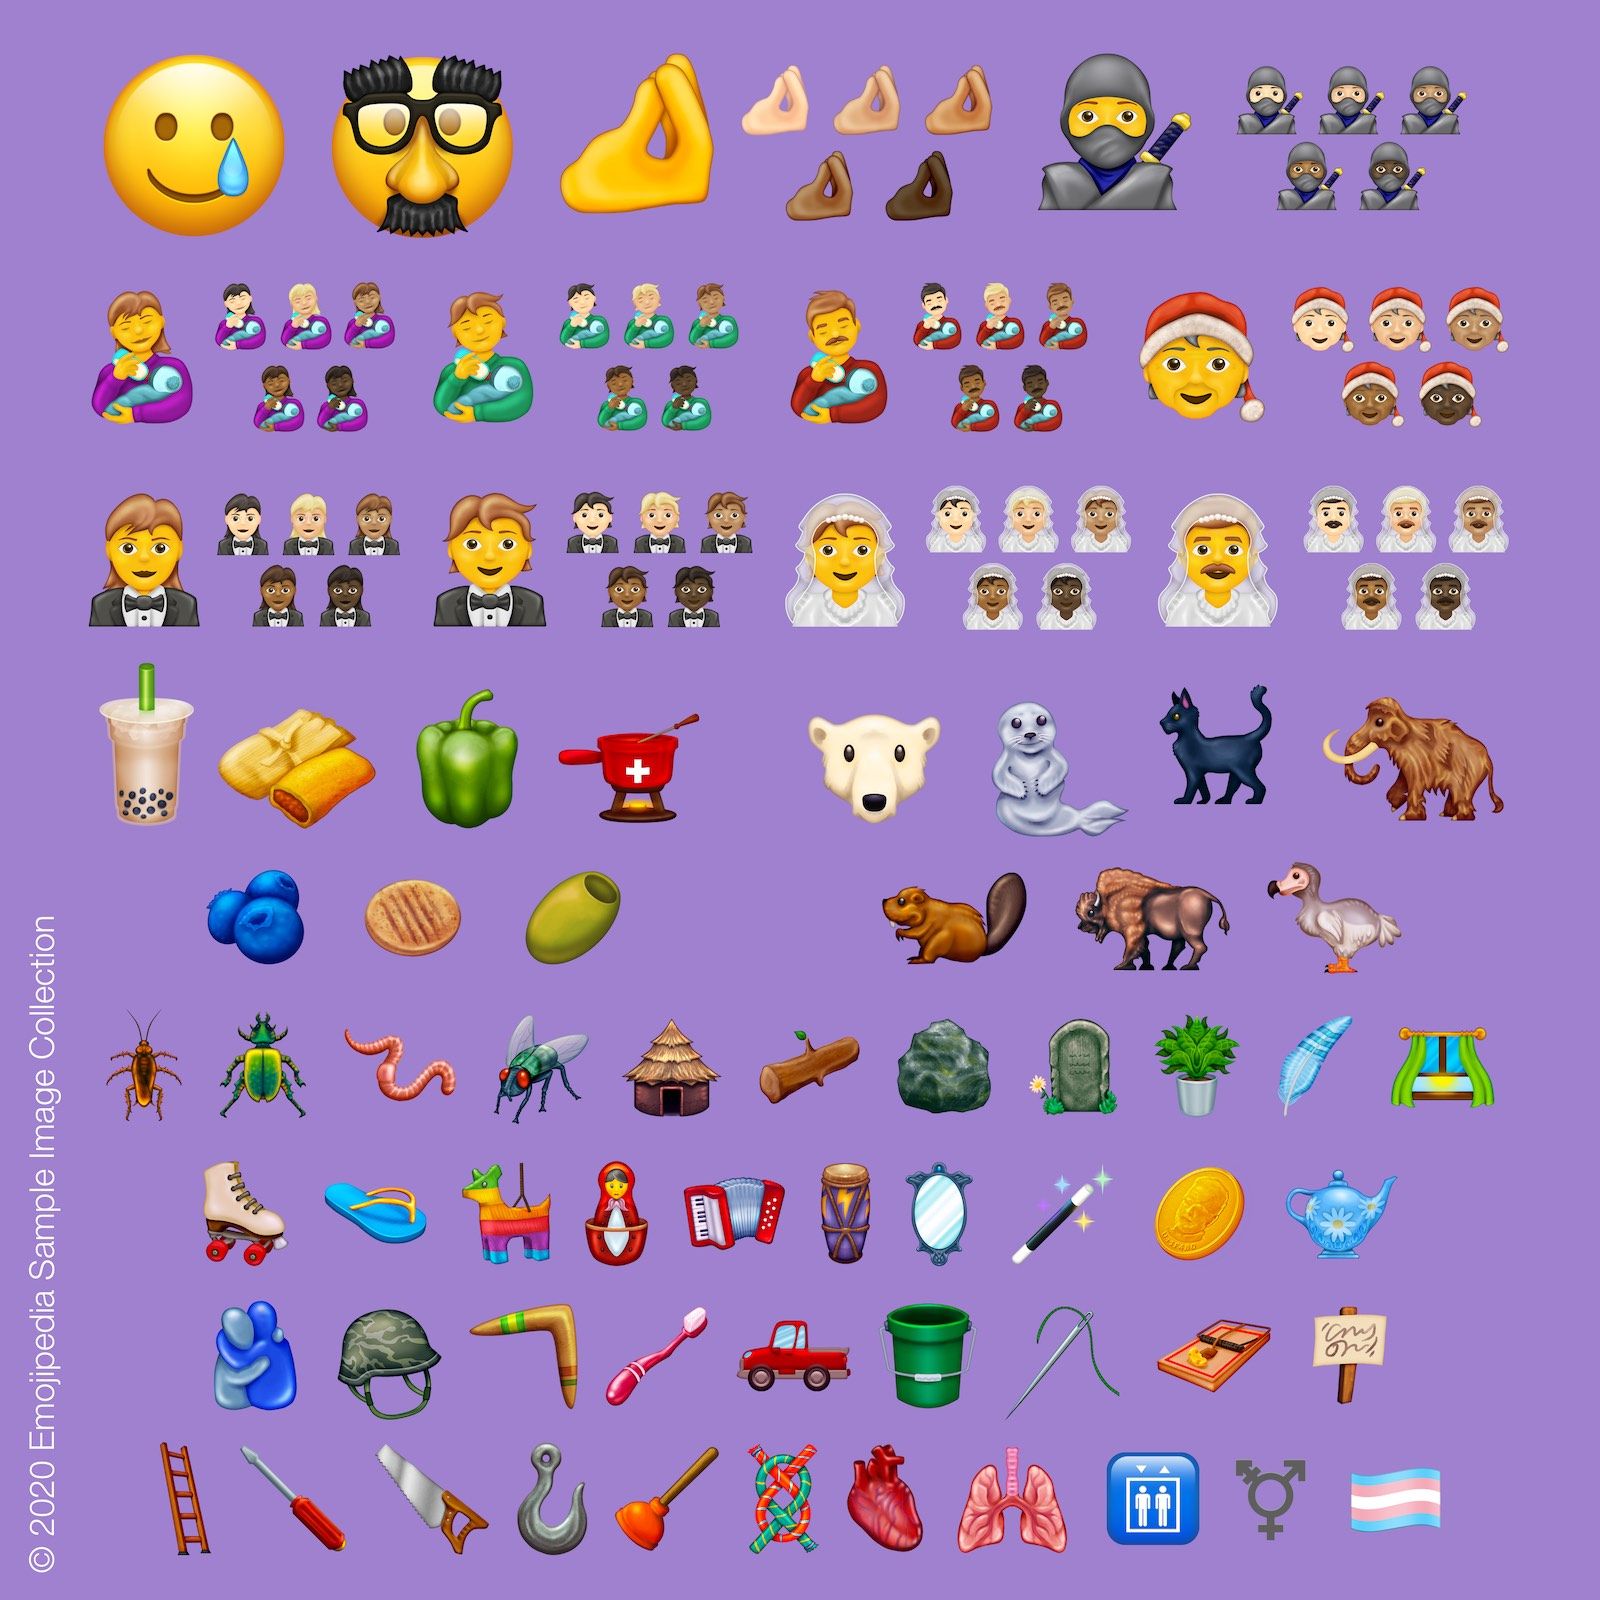 Nuevos emojis 2020 WhatsApp Facebook